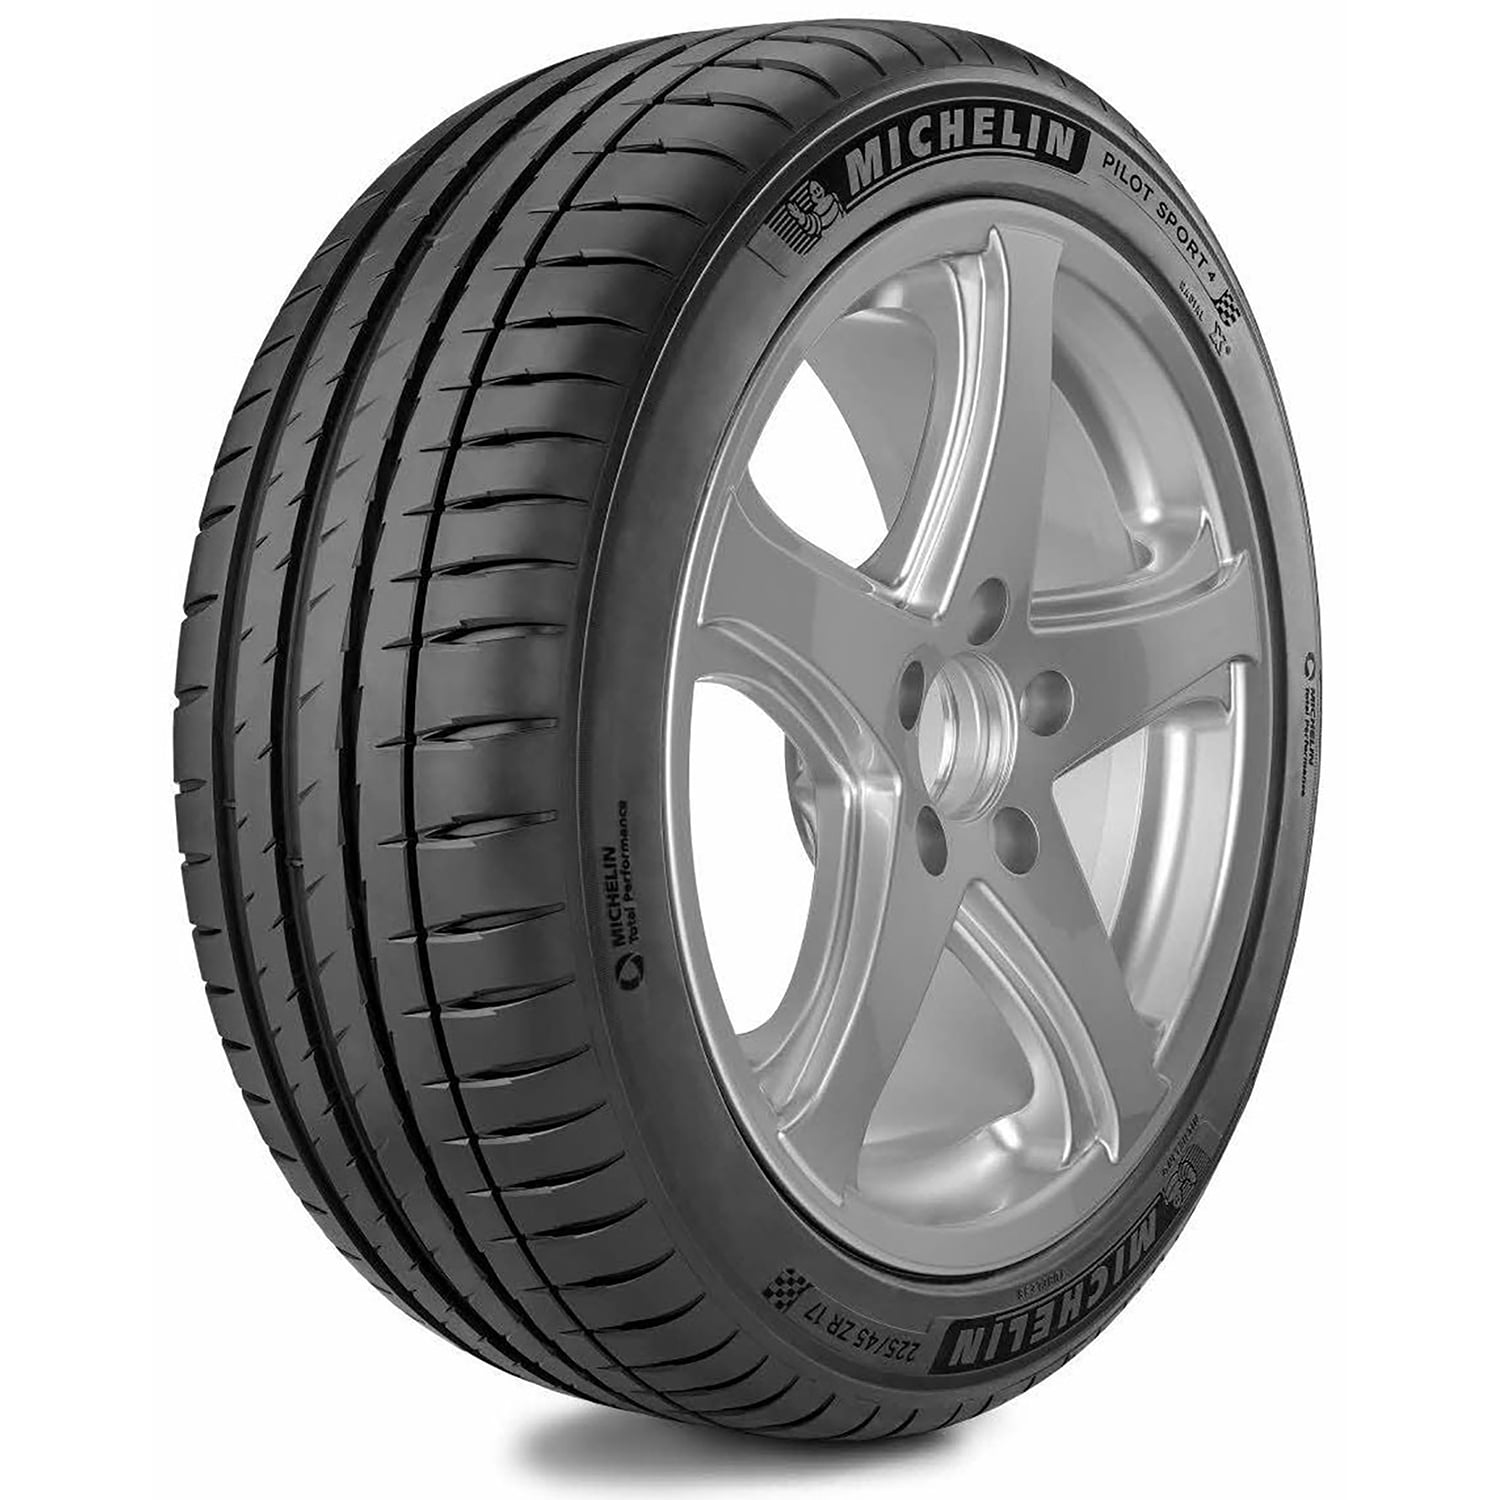 Deshonestidad Subproducto ambición Michelin Pilot Sport 4 Summer 225/45R18 91W Tire - Walmart.com